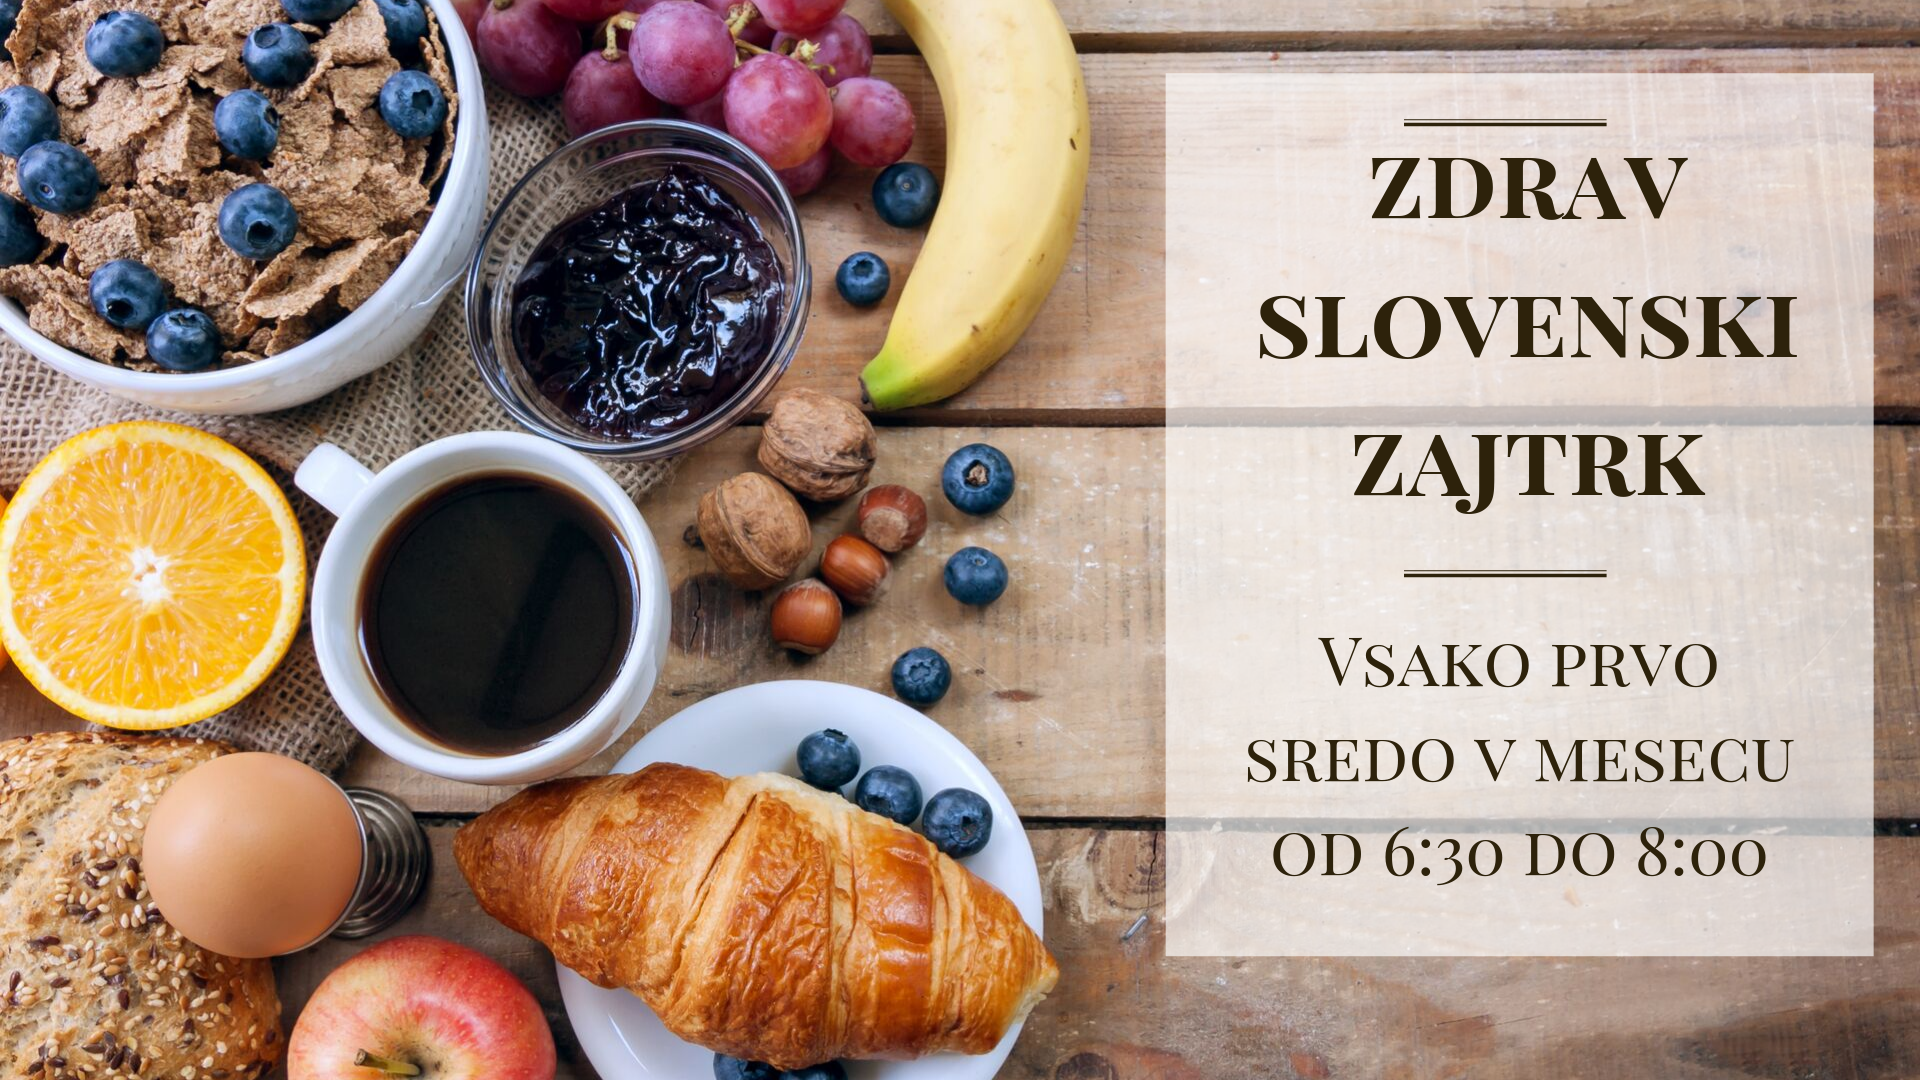 Zdrav slovenski zajtrk